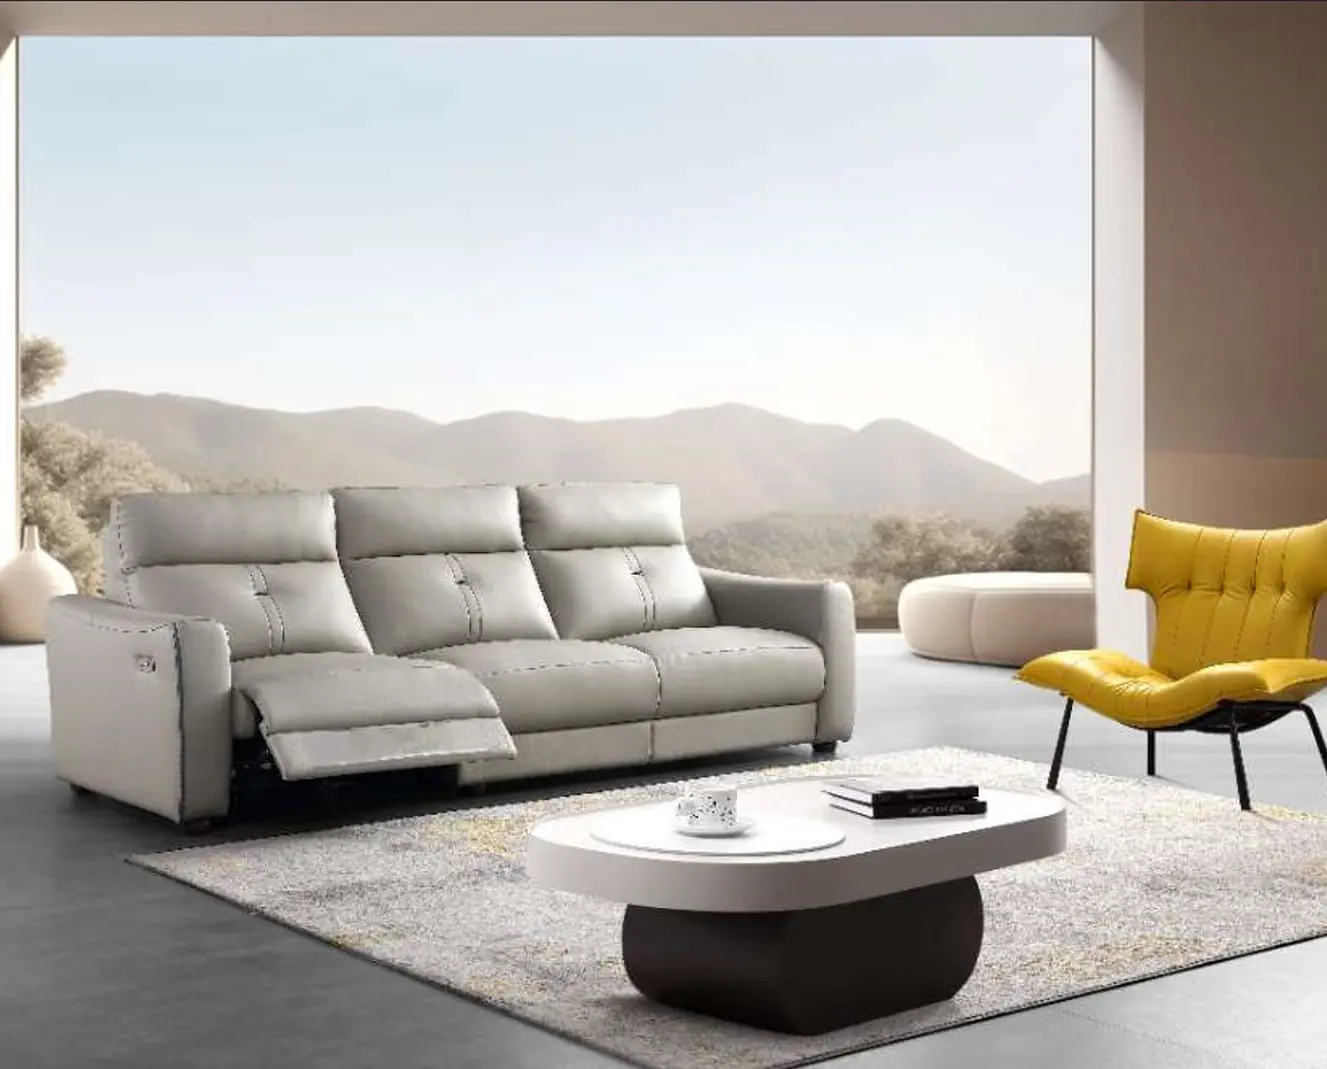 Modern lüks tasarım kanepe oturma odası mobilya Recliner koltuk takımı deri mobilya elektrikli Reclined koltuk takımı